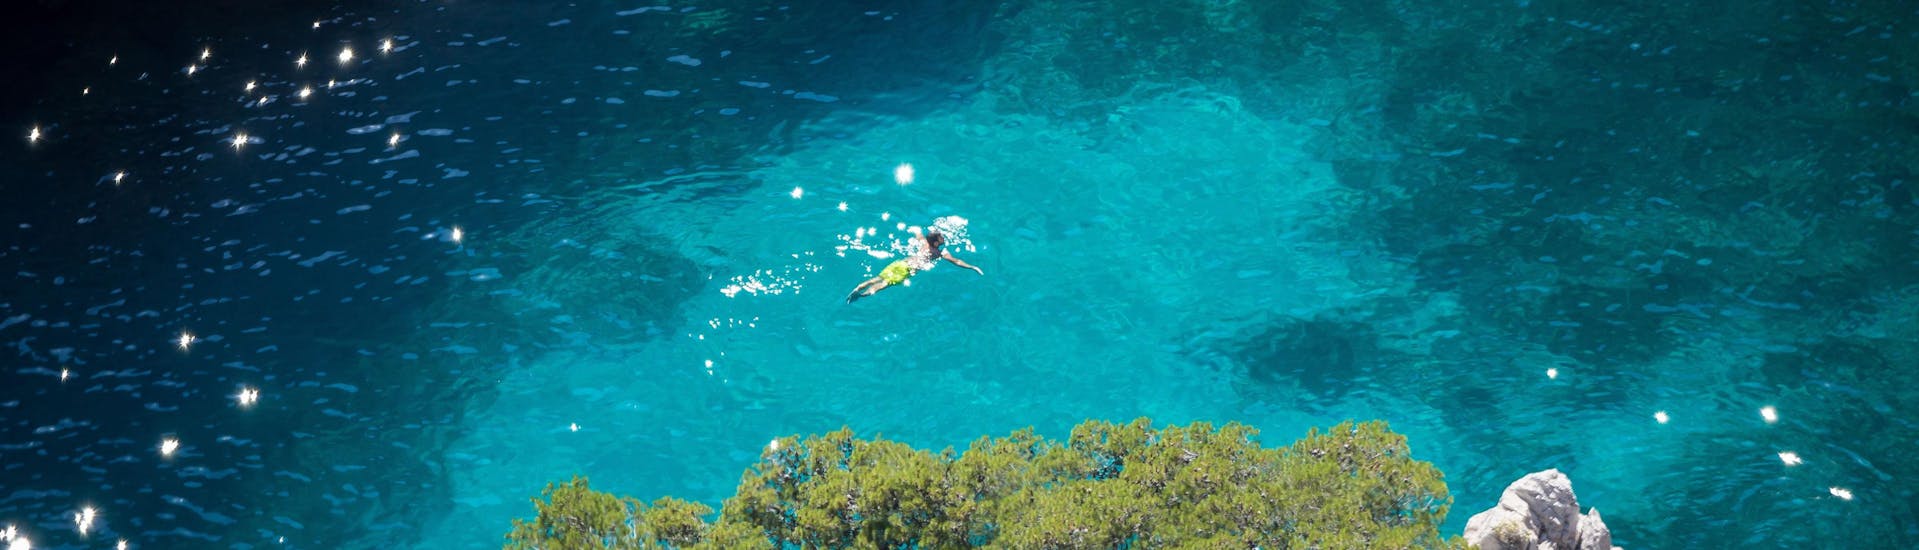 Un baigneur nage dans les eaux turquoise du parc national des Calanques, un des hauts lieux de la plongée et du snorkeling sur la Côte d'Azur.